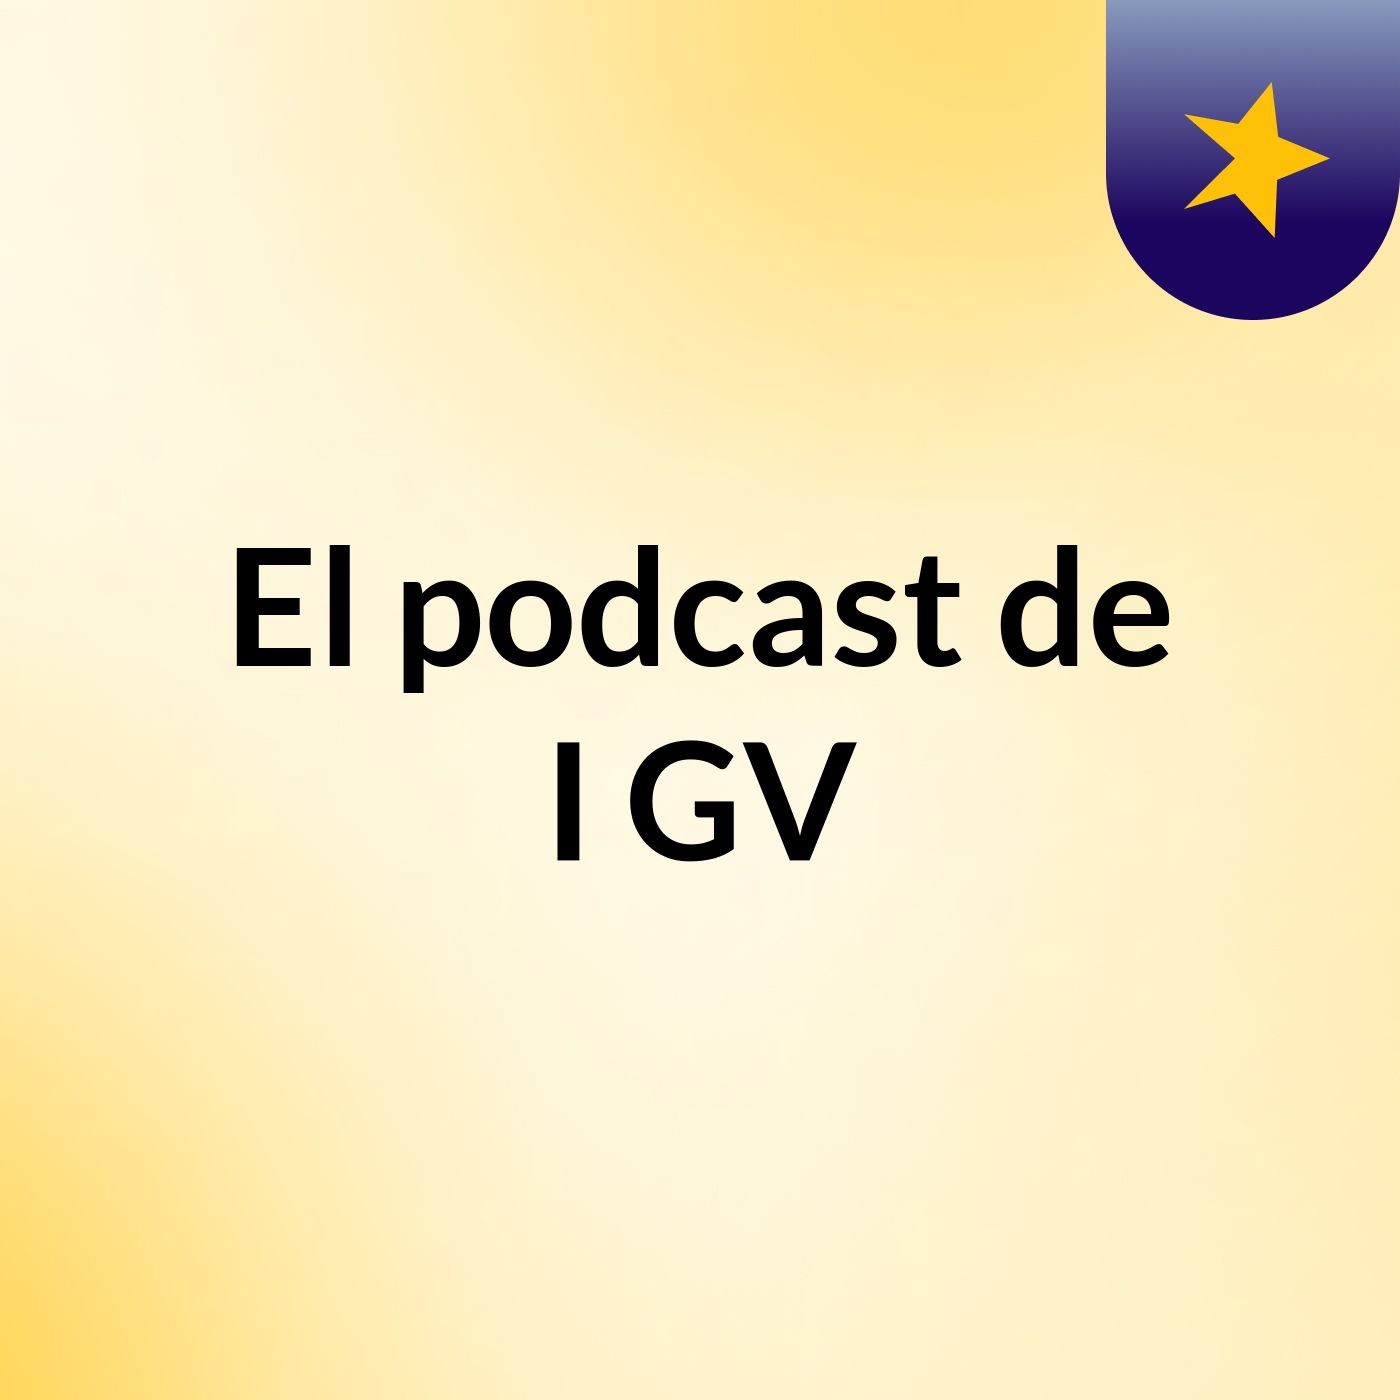 El podcast de I GV